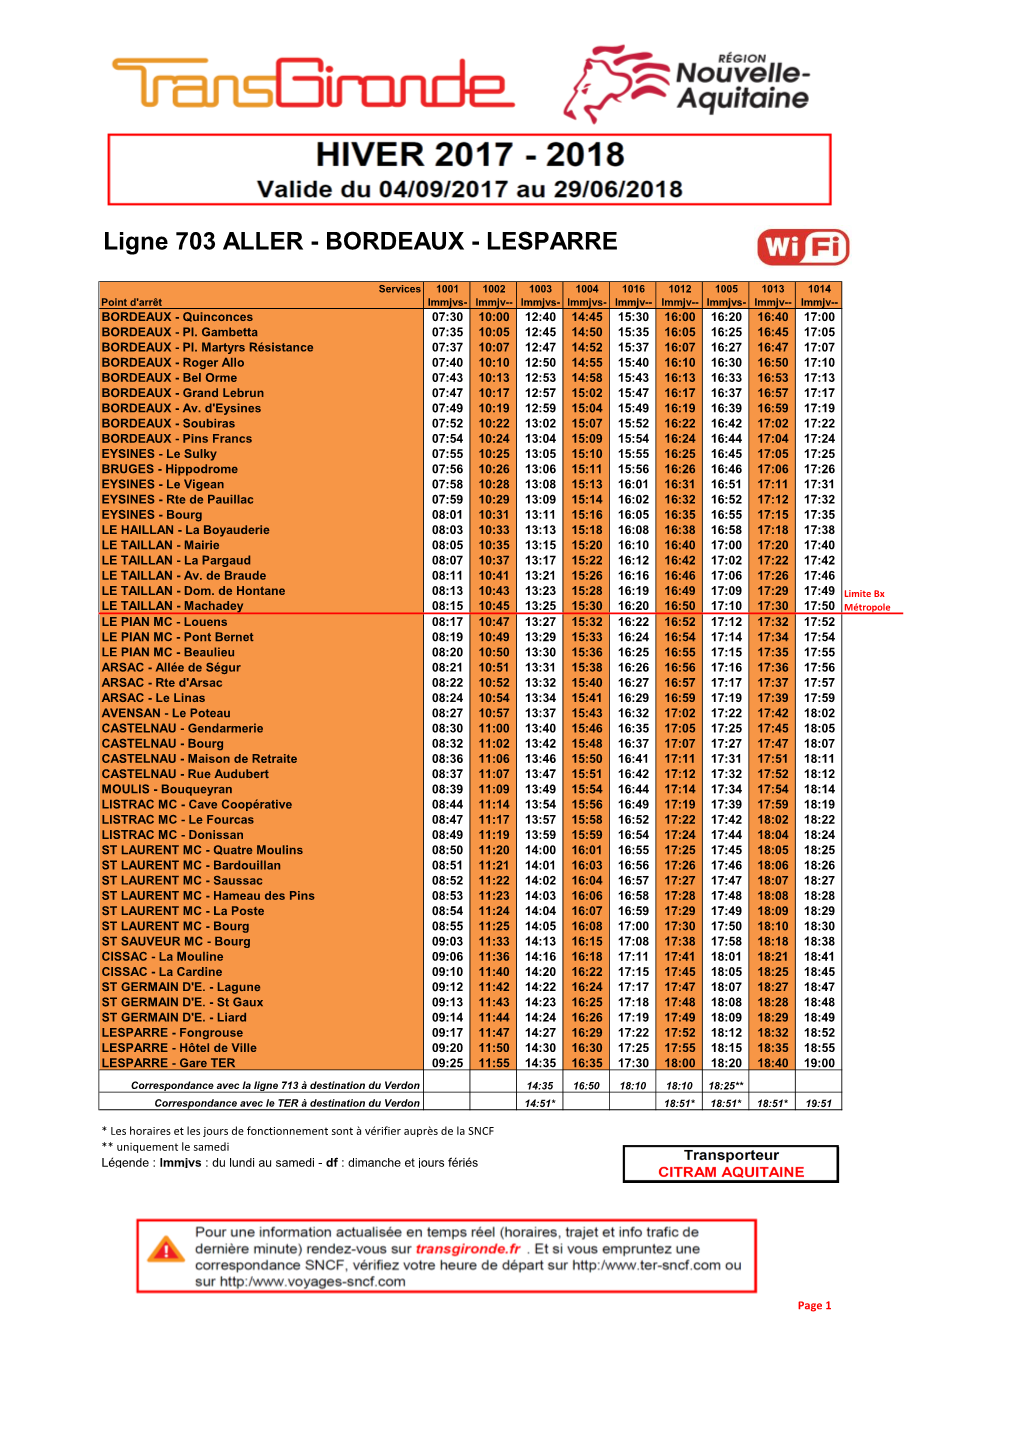 Ligne 703 ALLER - BORDEAUX - LESPARRE